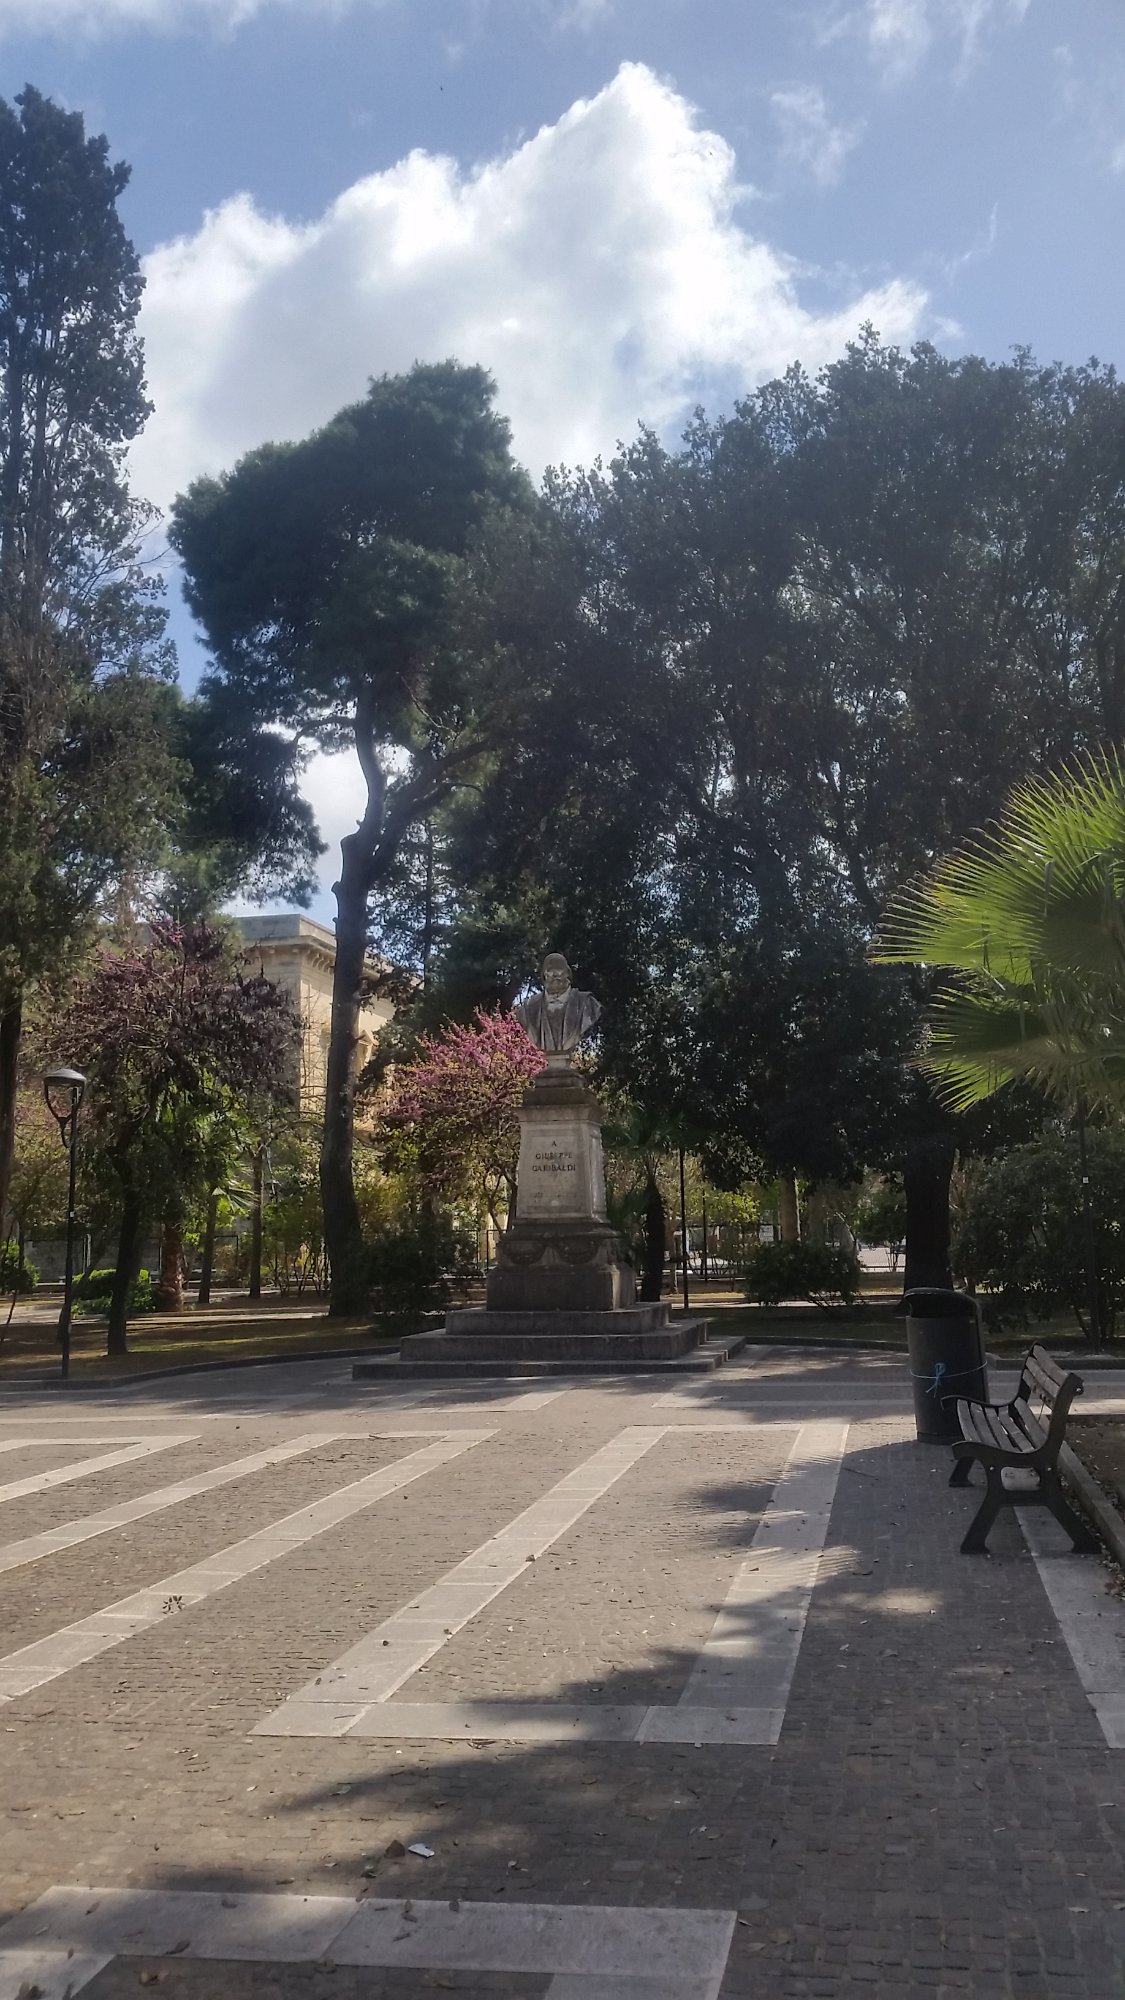 Monumento a  Giuseppe Garibaldi